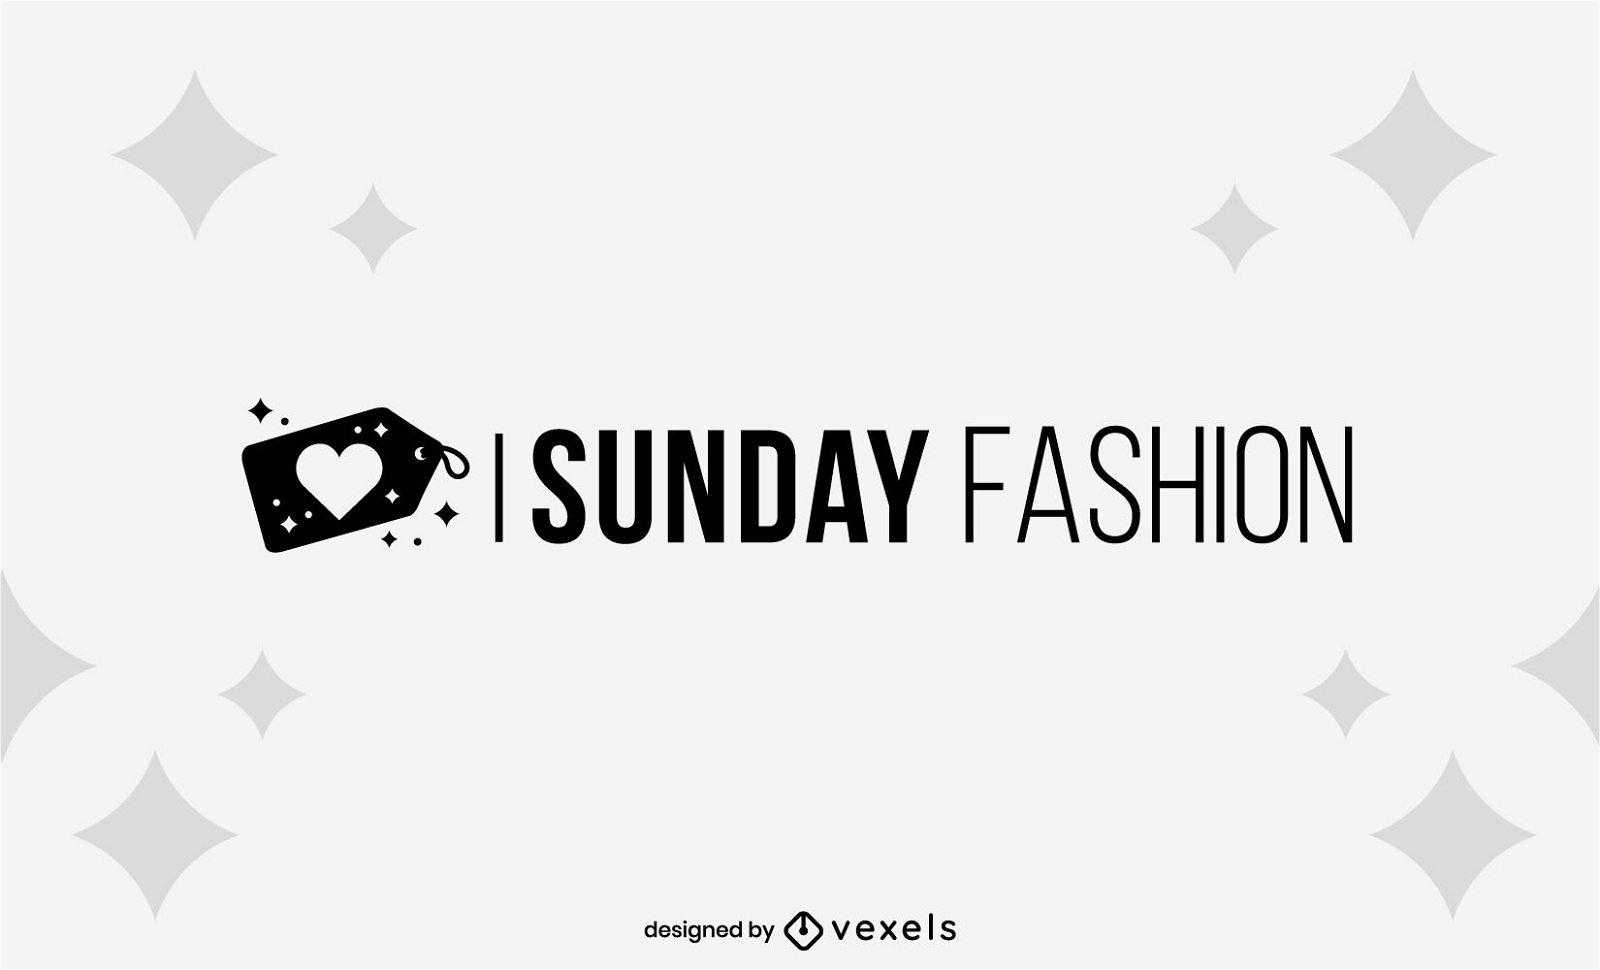 Sunday fashion business logo design